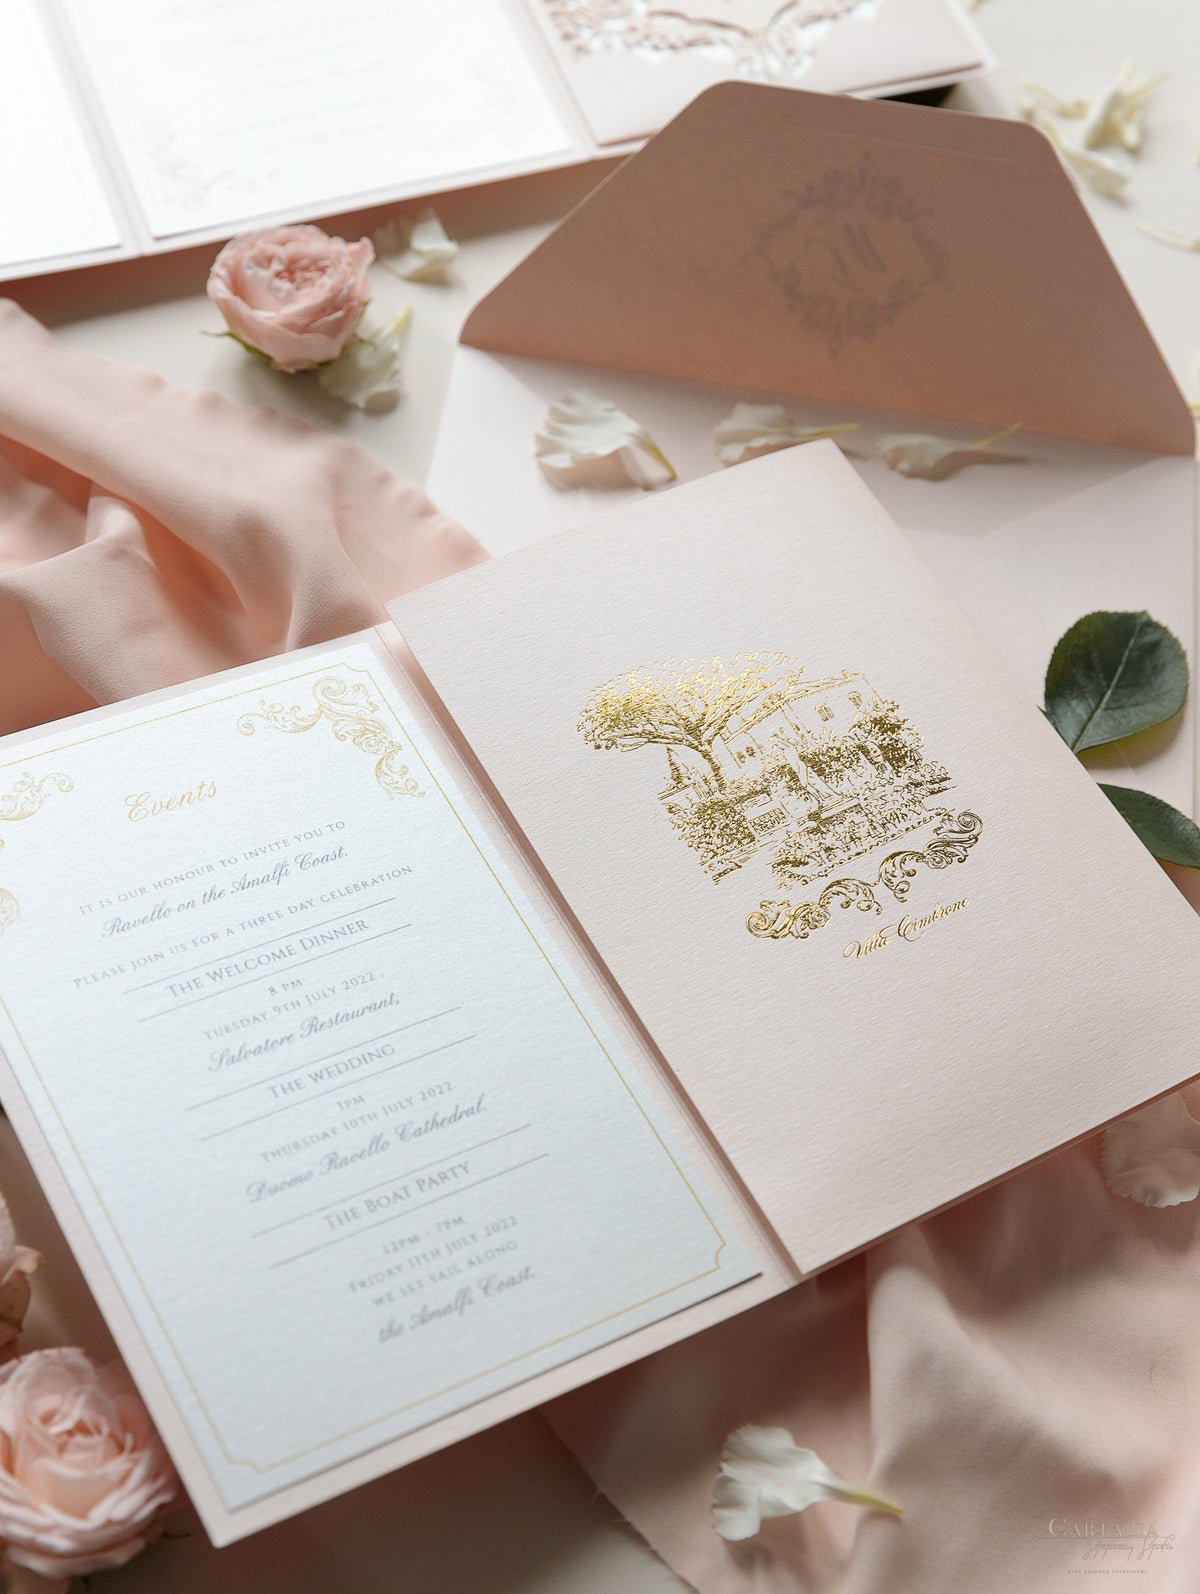 Suite tascabile classica di lusso con fard e crema con lamina d'oro e schizzo della location del matrimonio | Italia Villa Cimbrone, Ravello